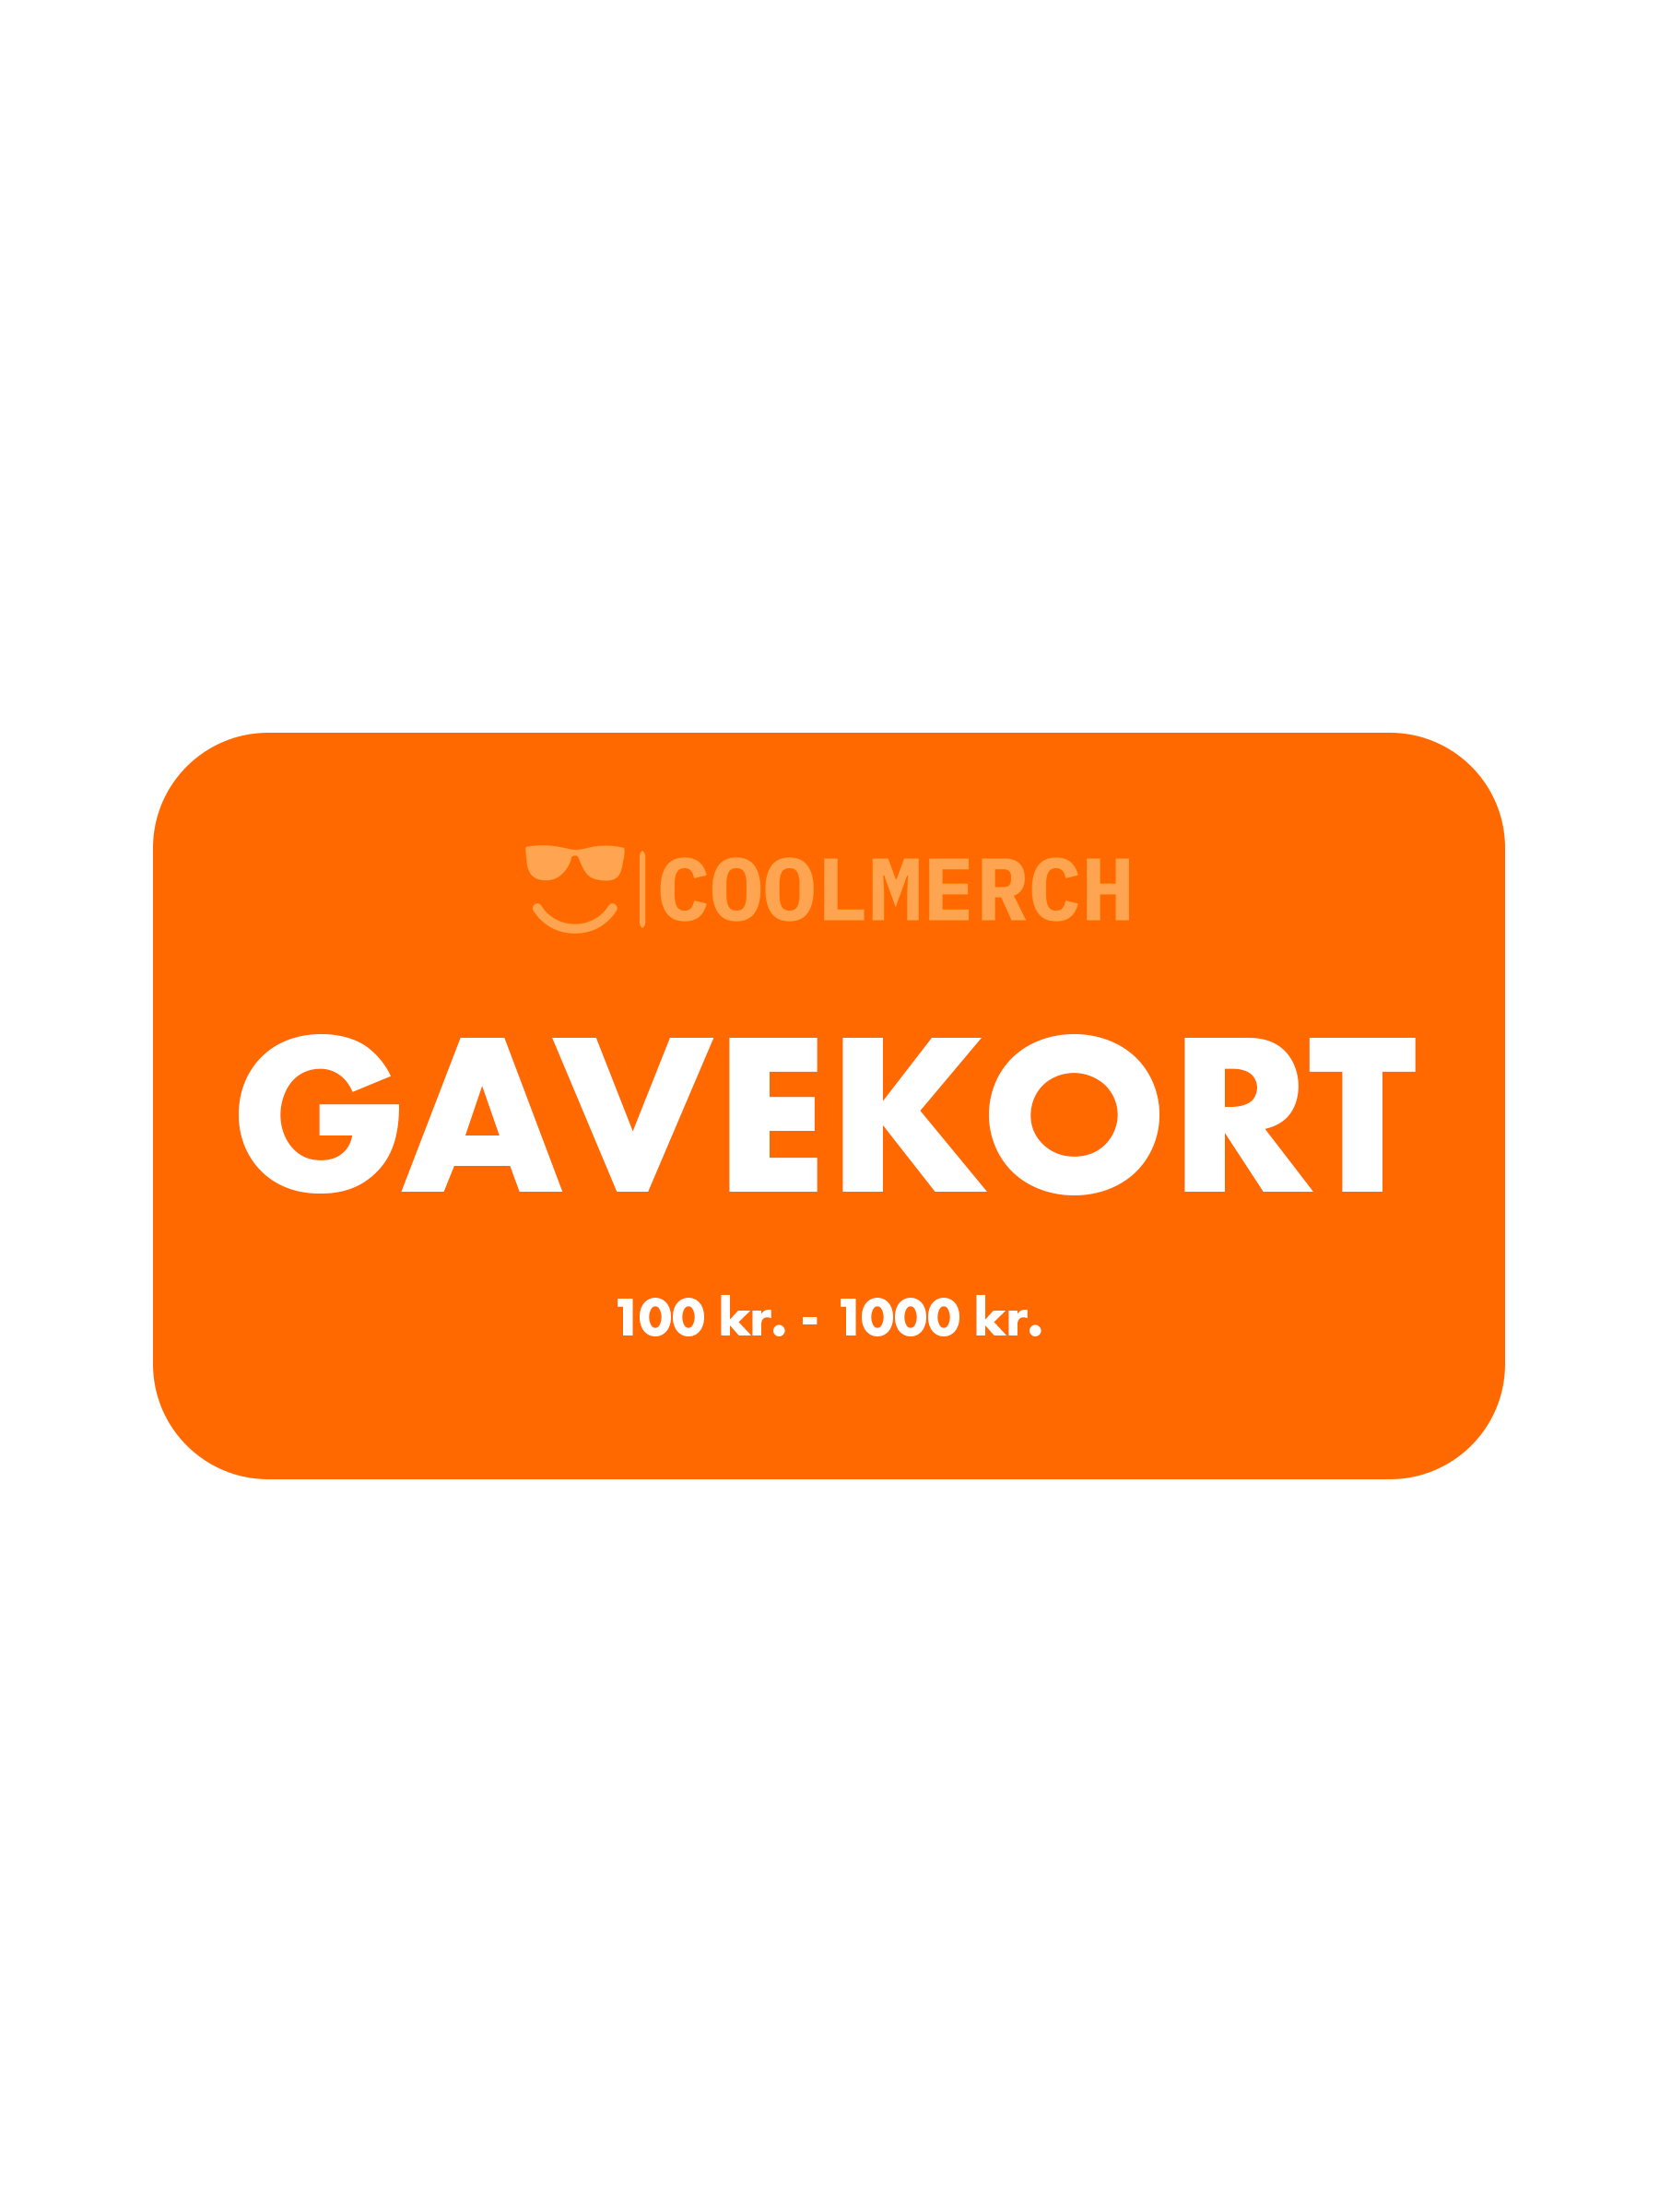 Coolmerch Gavekort